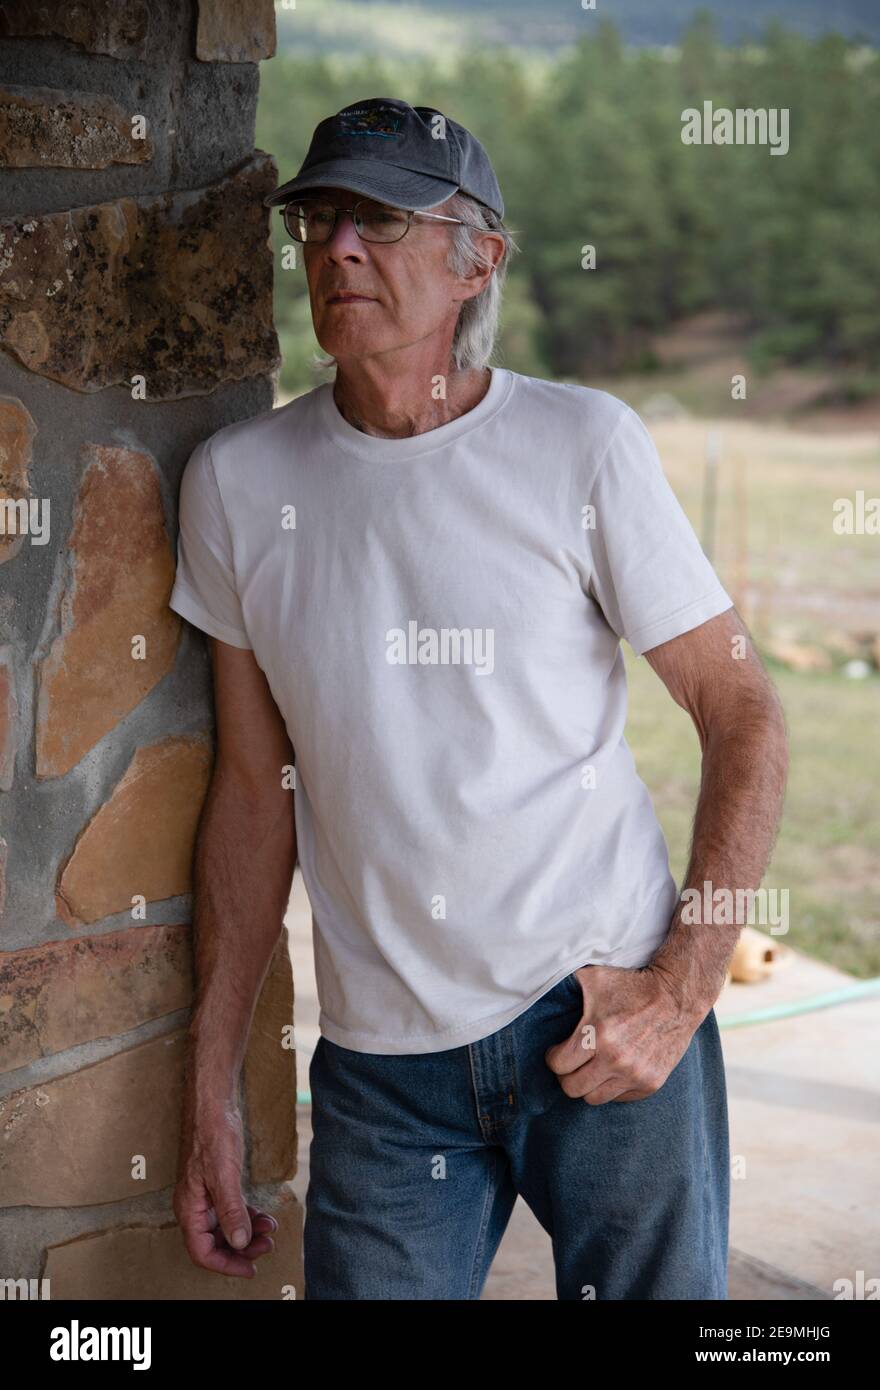 Un joven, hermoso, de 79 años de edad con una camiseta blanca y jeans se apoya contra una pared de piedra. Foto de stock